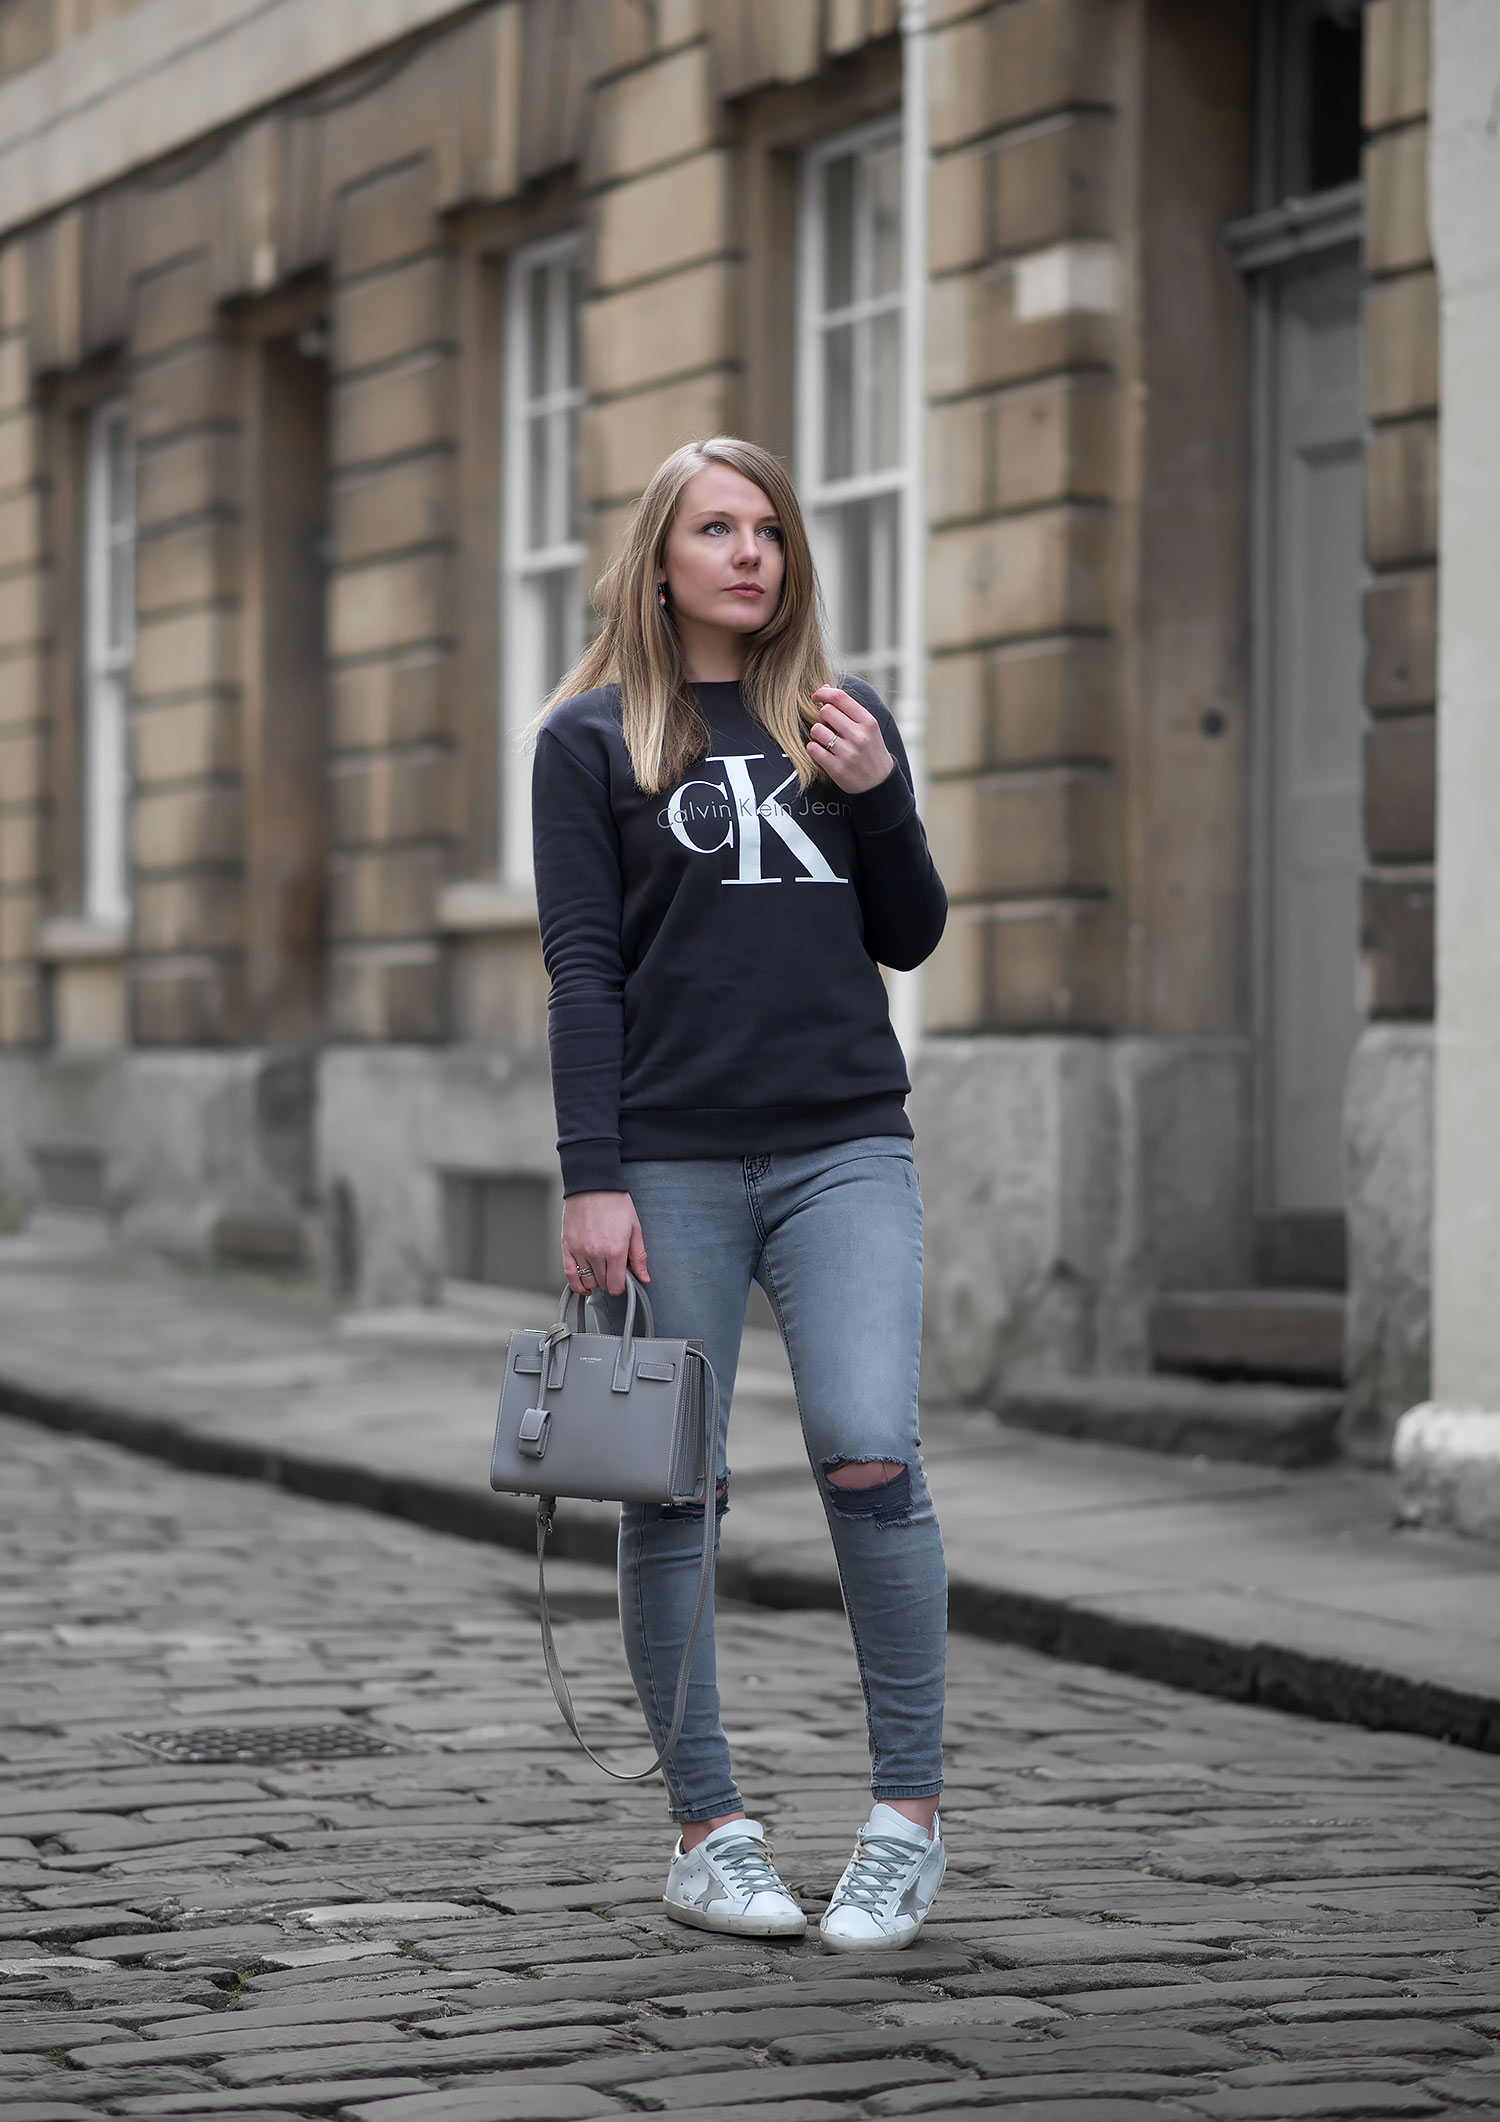 Keeping It Casual In A Calvin Klein Sweatshirt – FORD LA FEMME